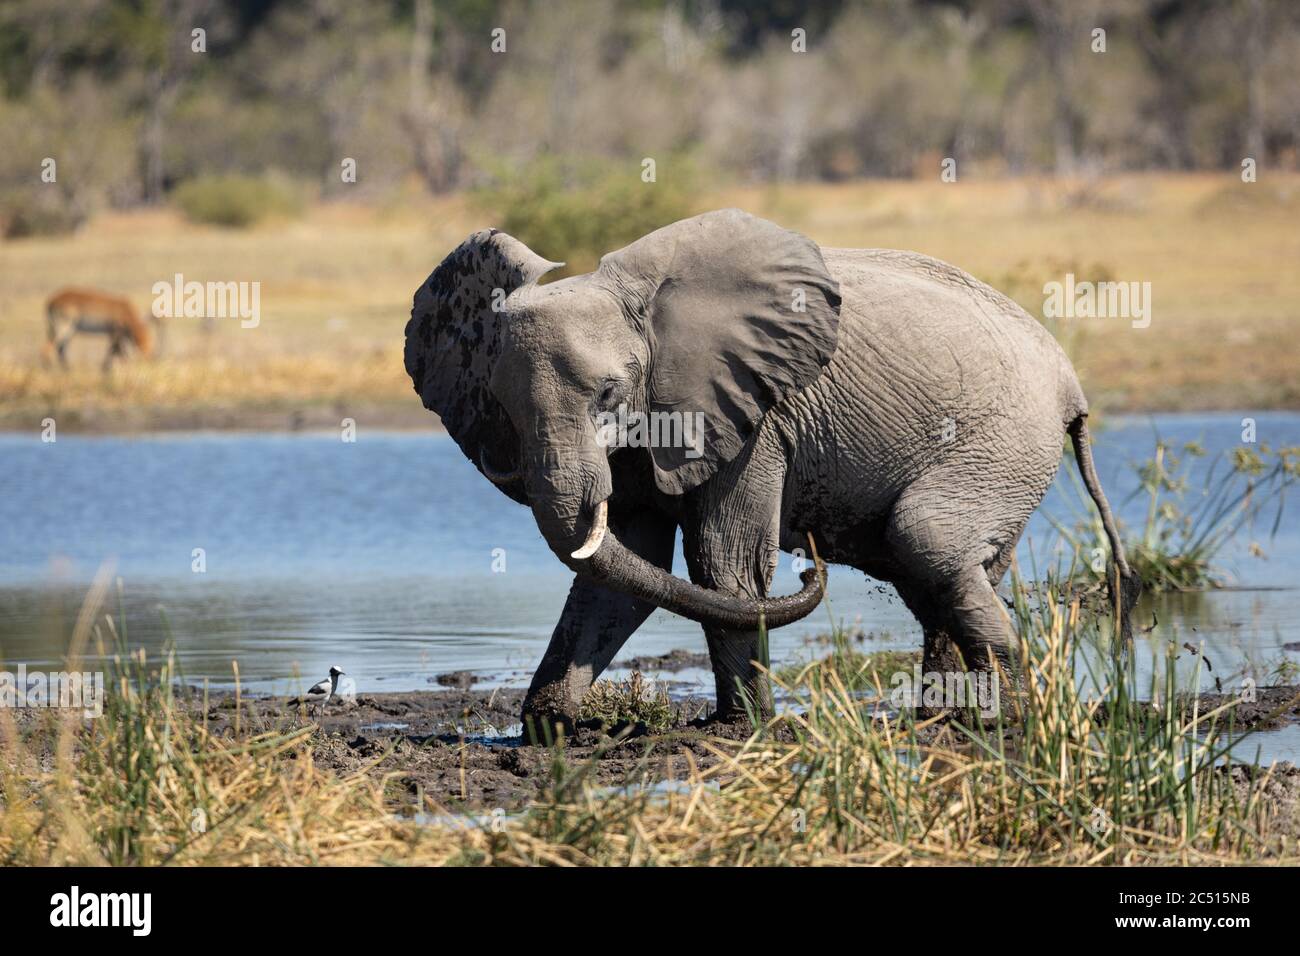 Un jeune éléphant agite son tronc debout au bord boueux de l'eau dans le delta de Moremi Okavango au Botswana Banque D'Images